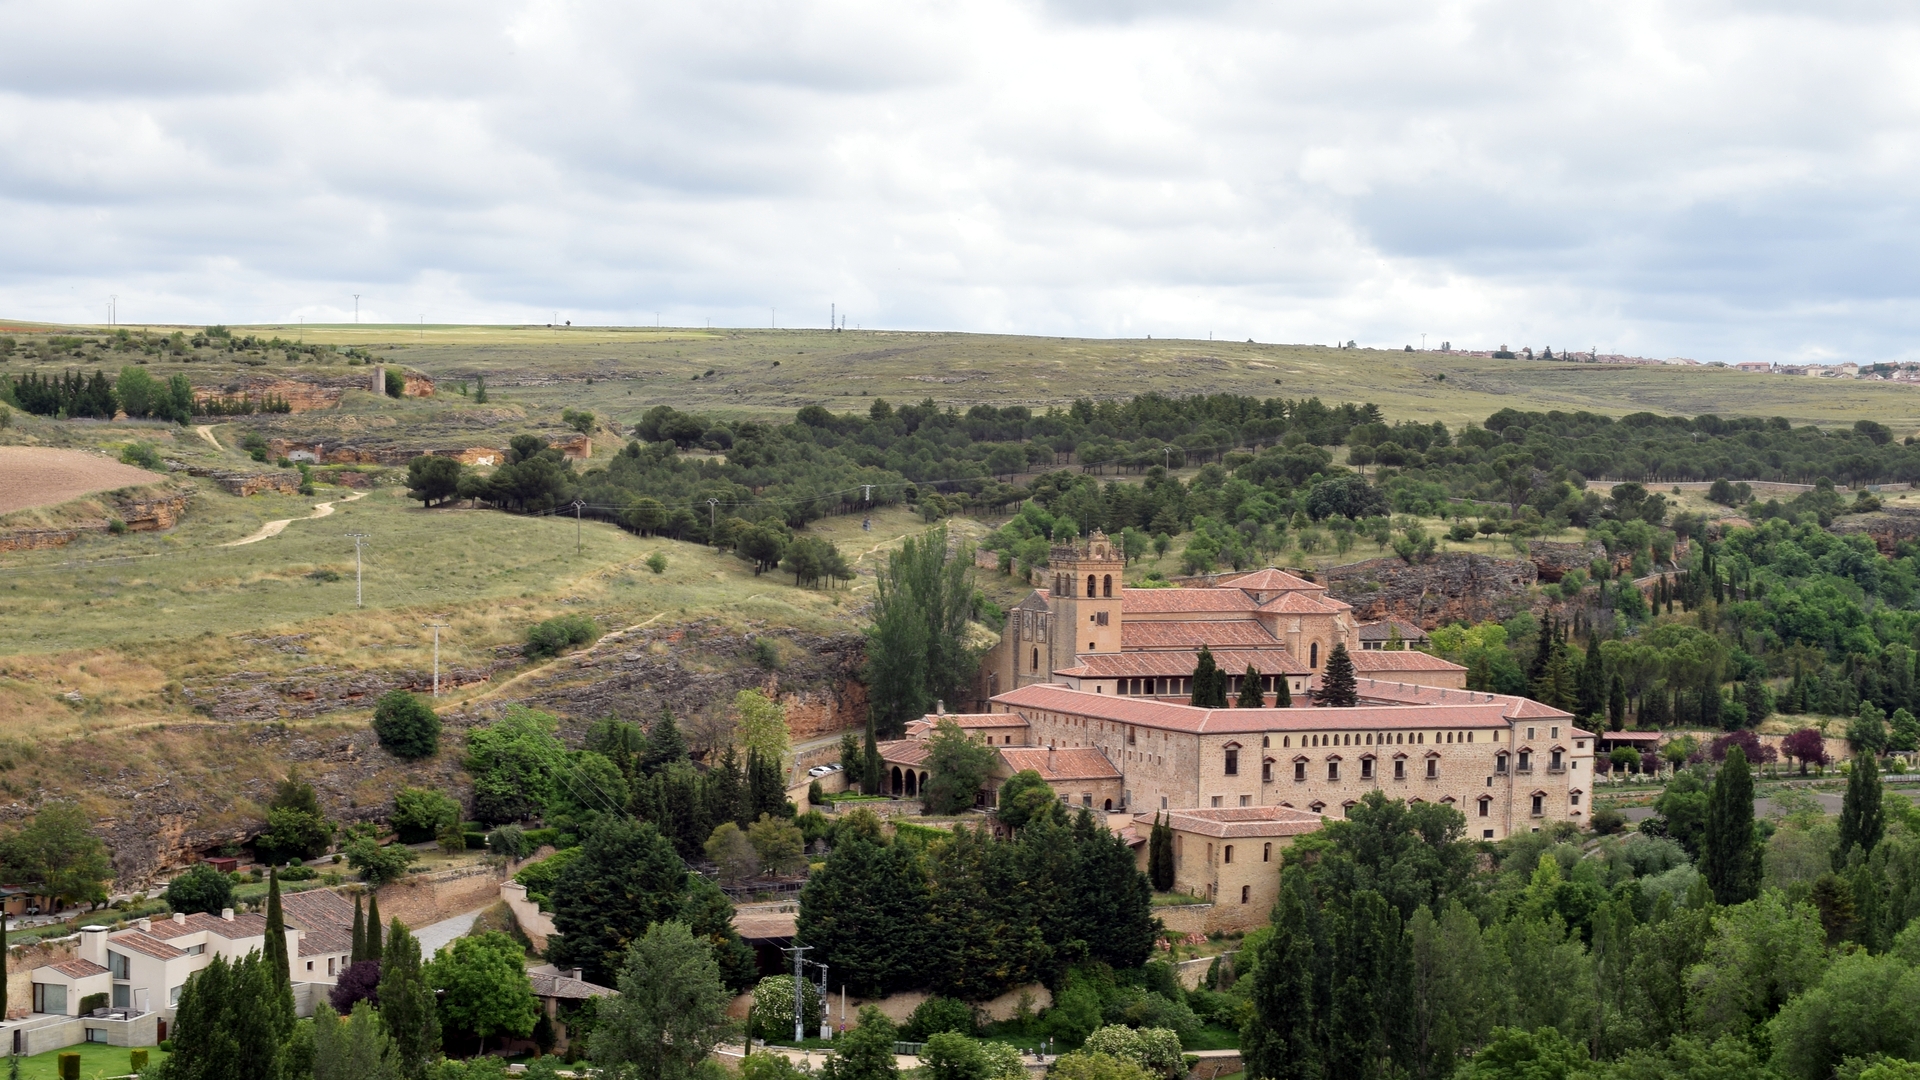 General 1920x1080 Segovia Castilla y León Spain monastery architecture landscape trees clouds sky building